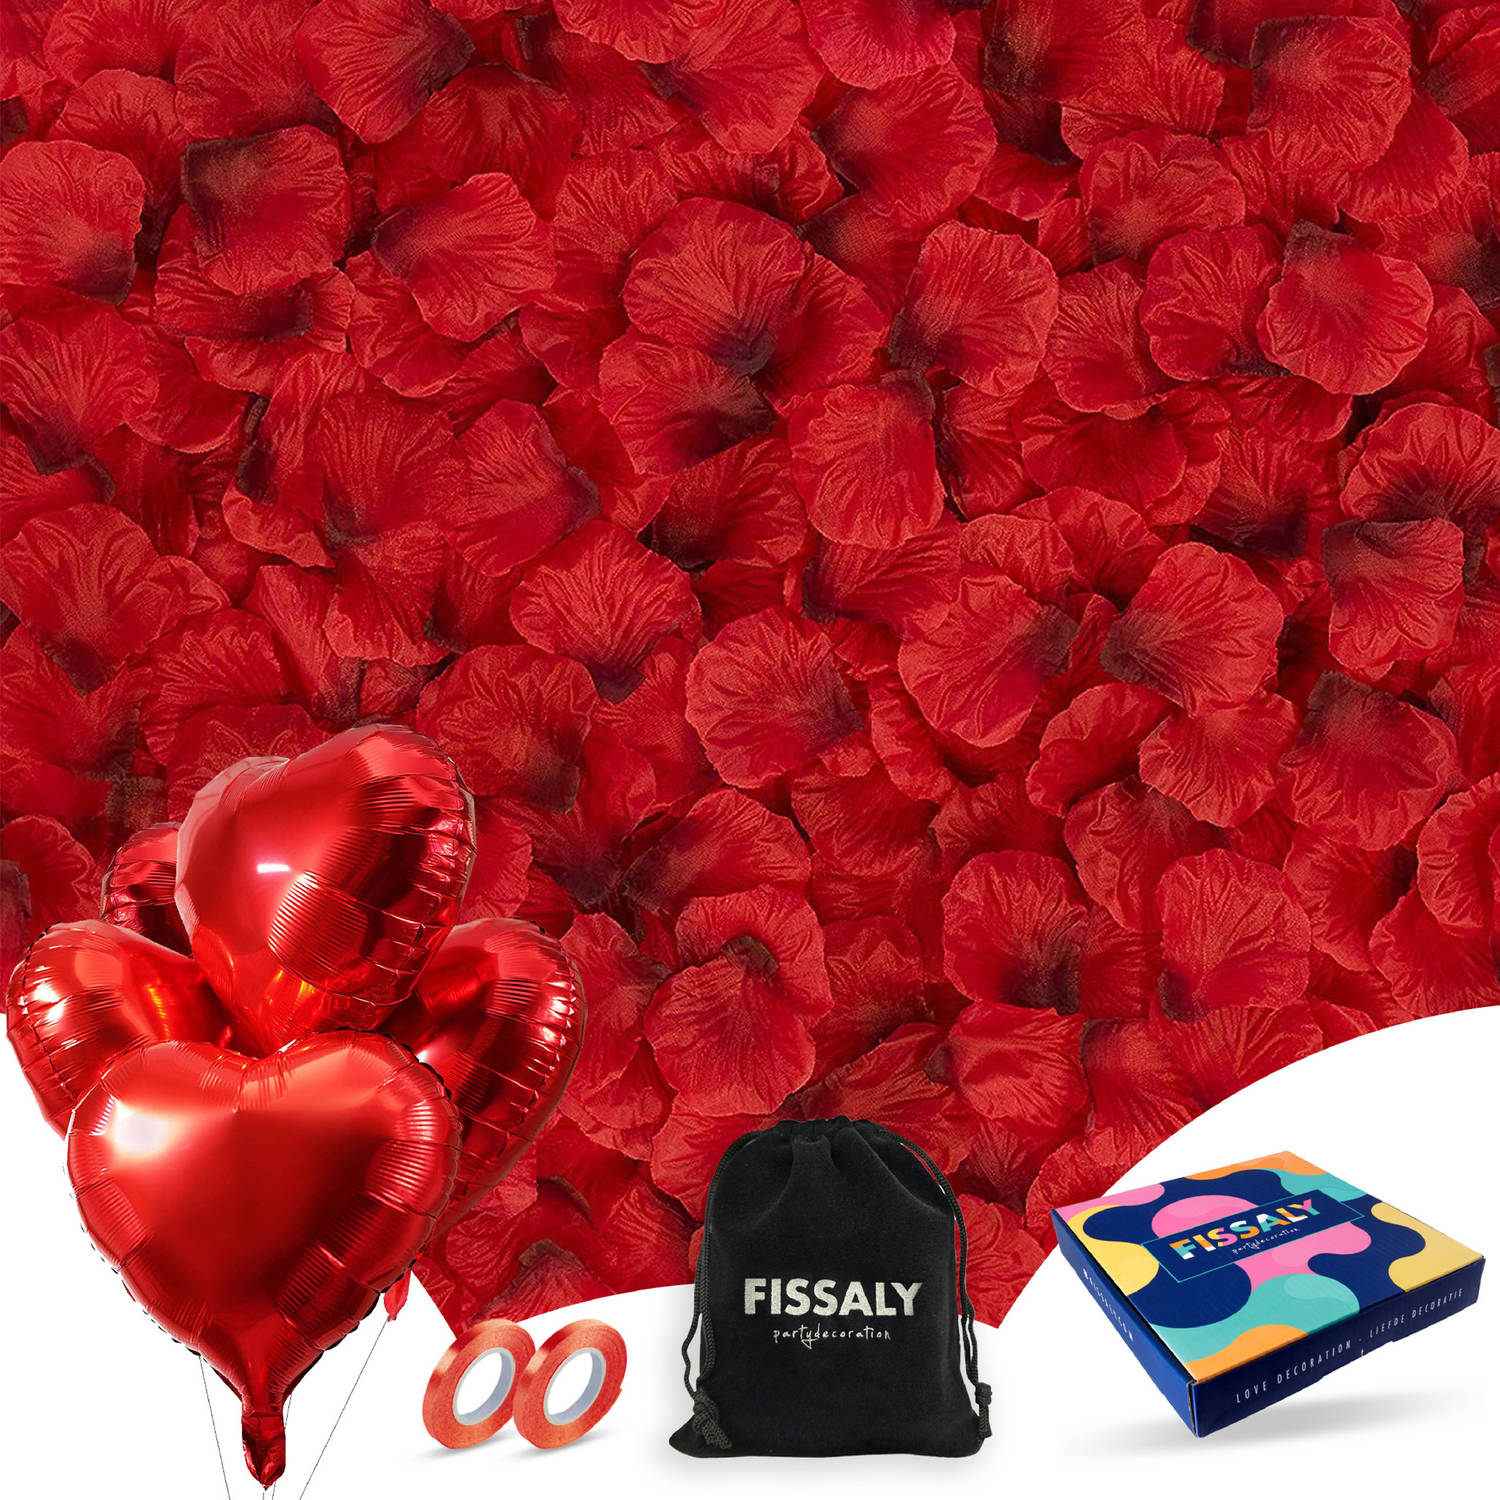 Fissaly® 2000 Stuks Rode Rozenblaadjes met Hartjes Ballonnen - Romantische Liefde Versiering - Liefdes Decoratie - Rood